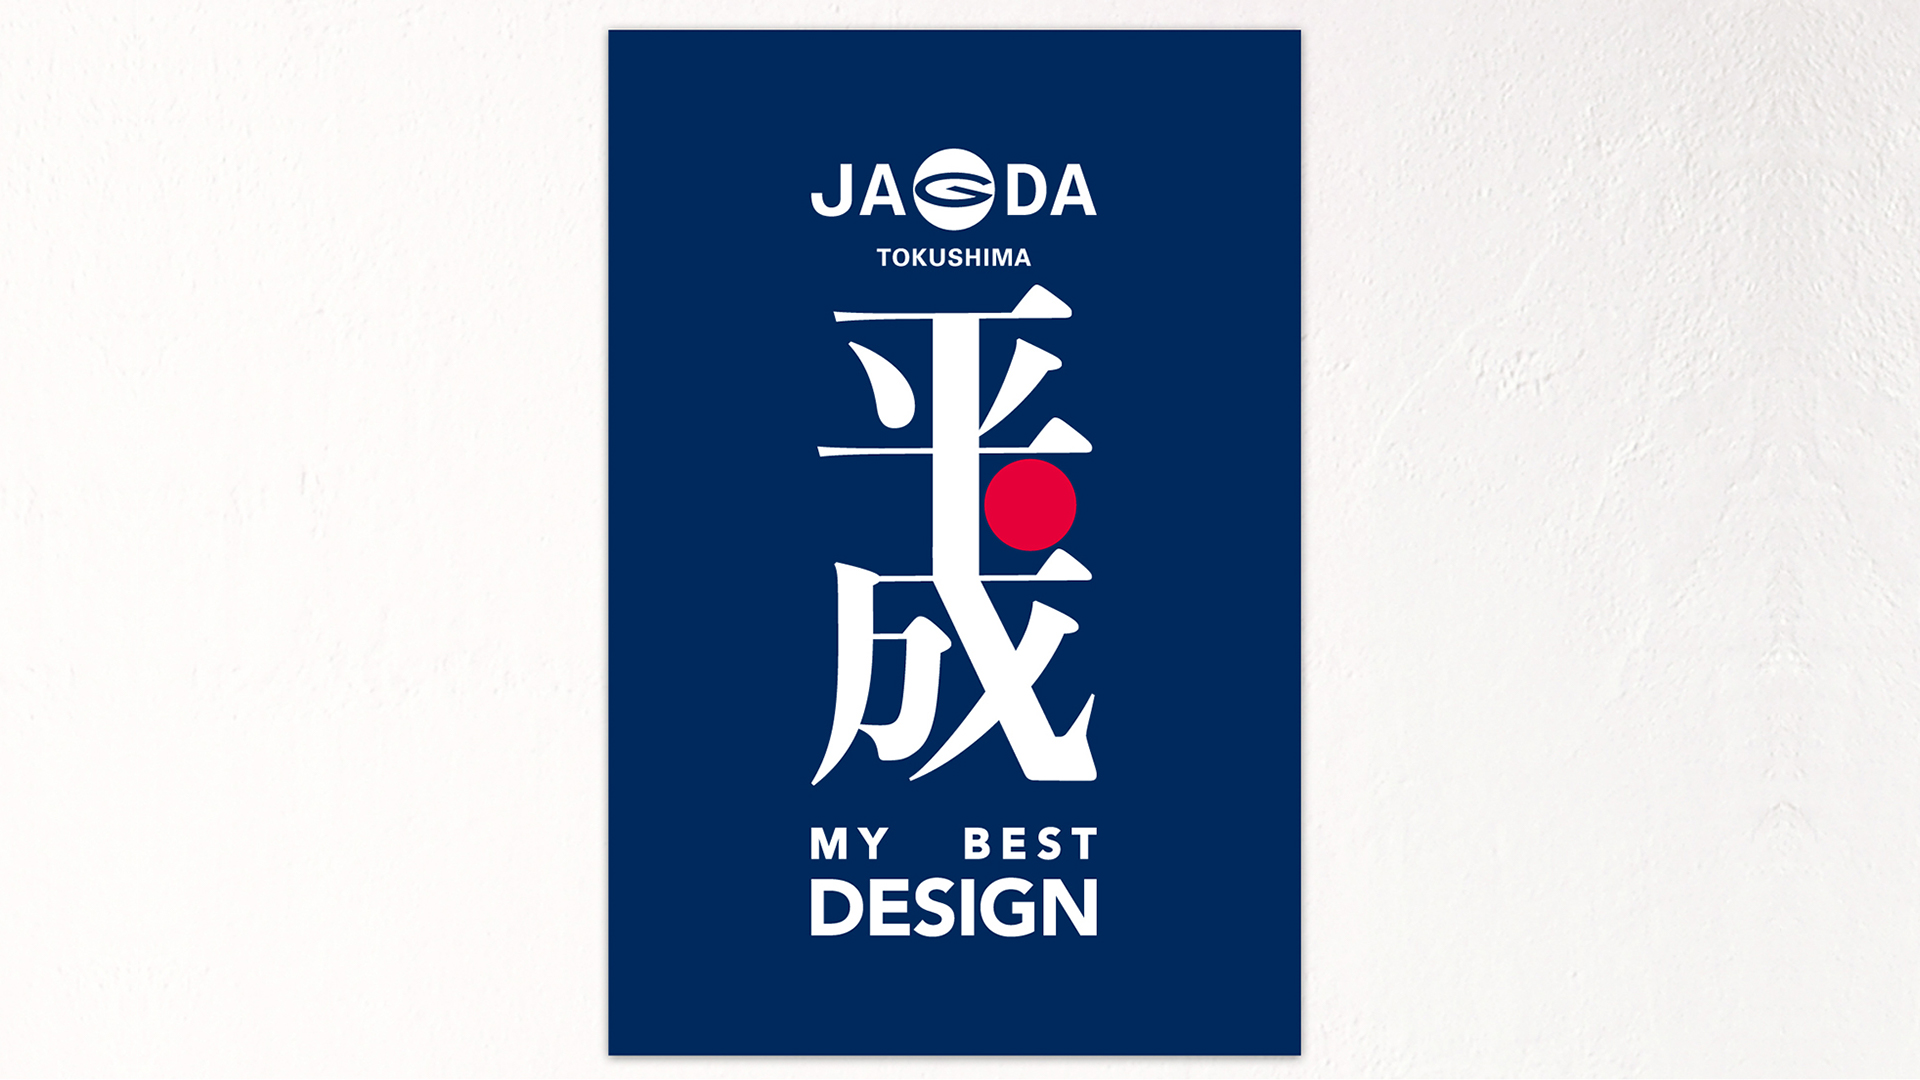 JAGDA徳島平成マイベストデザイン展ポスターデザイン